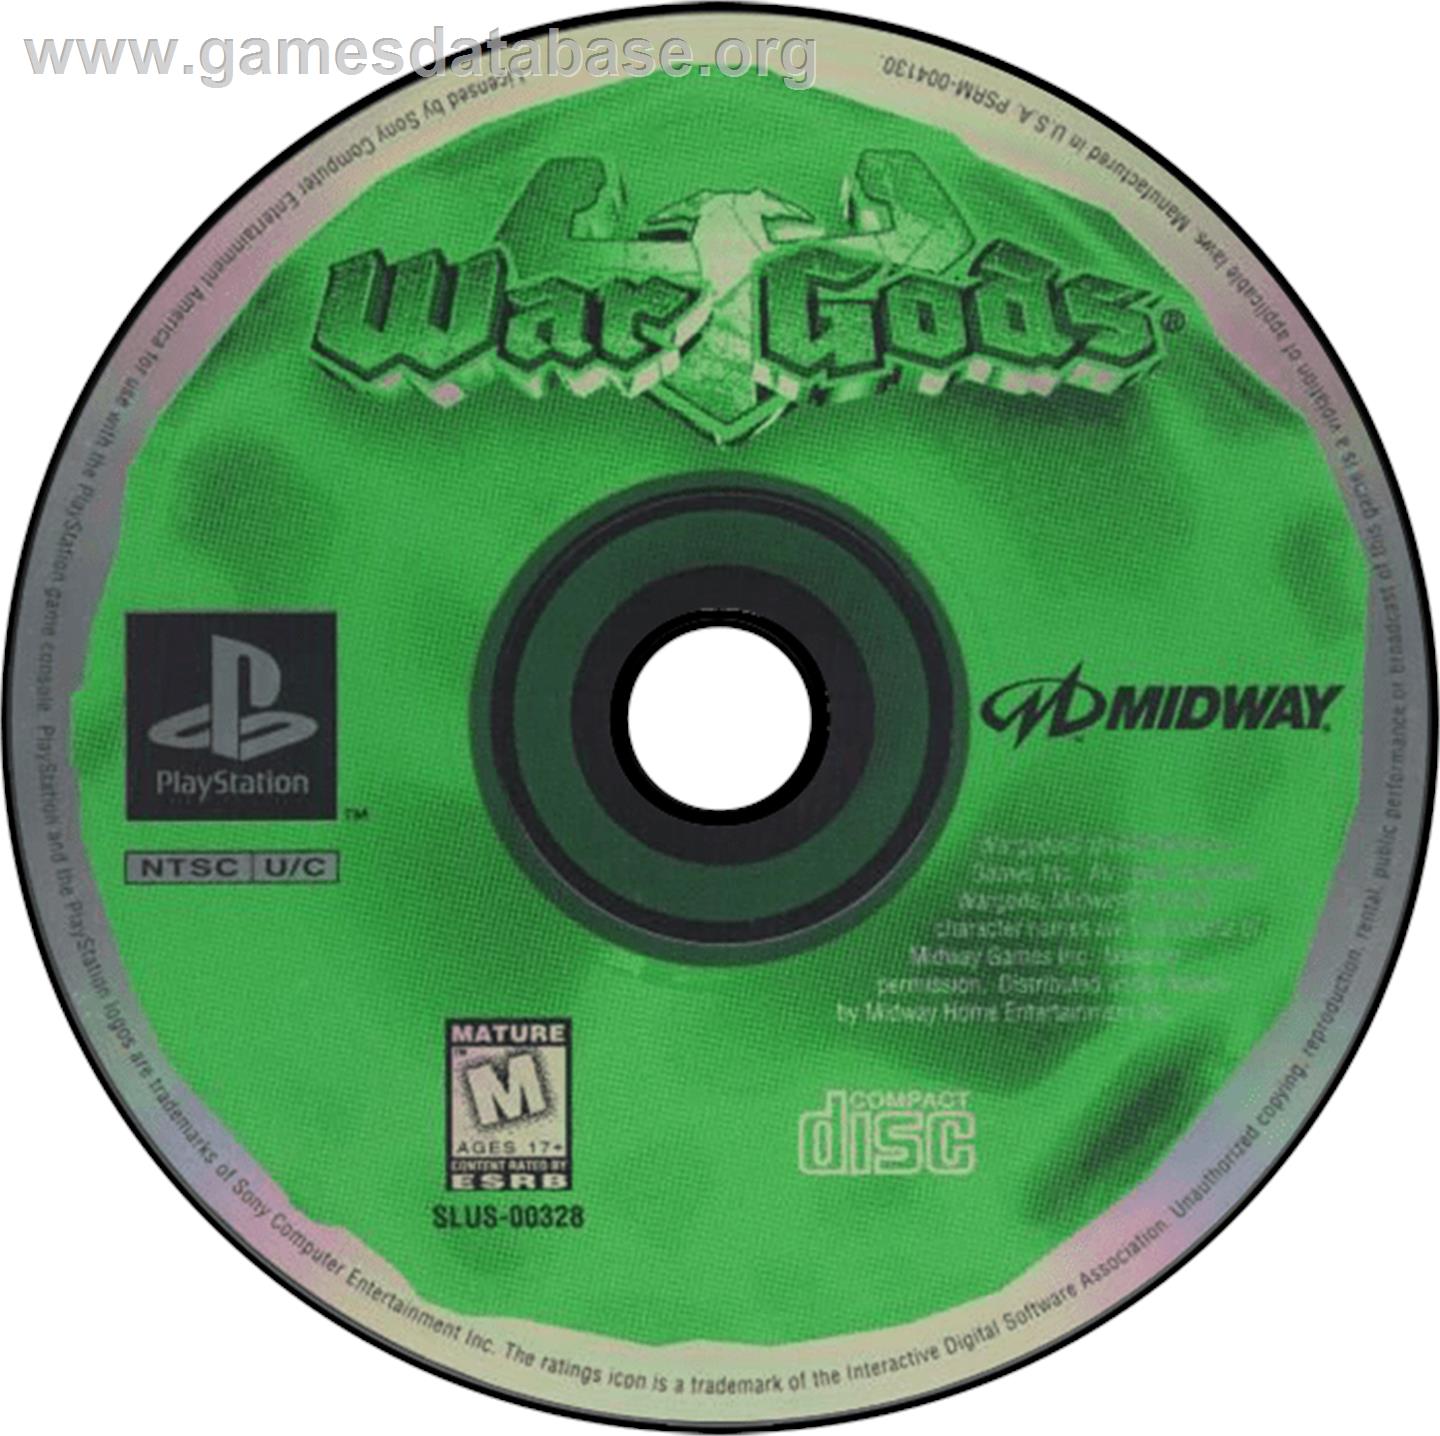 War Gods - Sony Playstation - Artwork - Disc